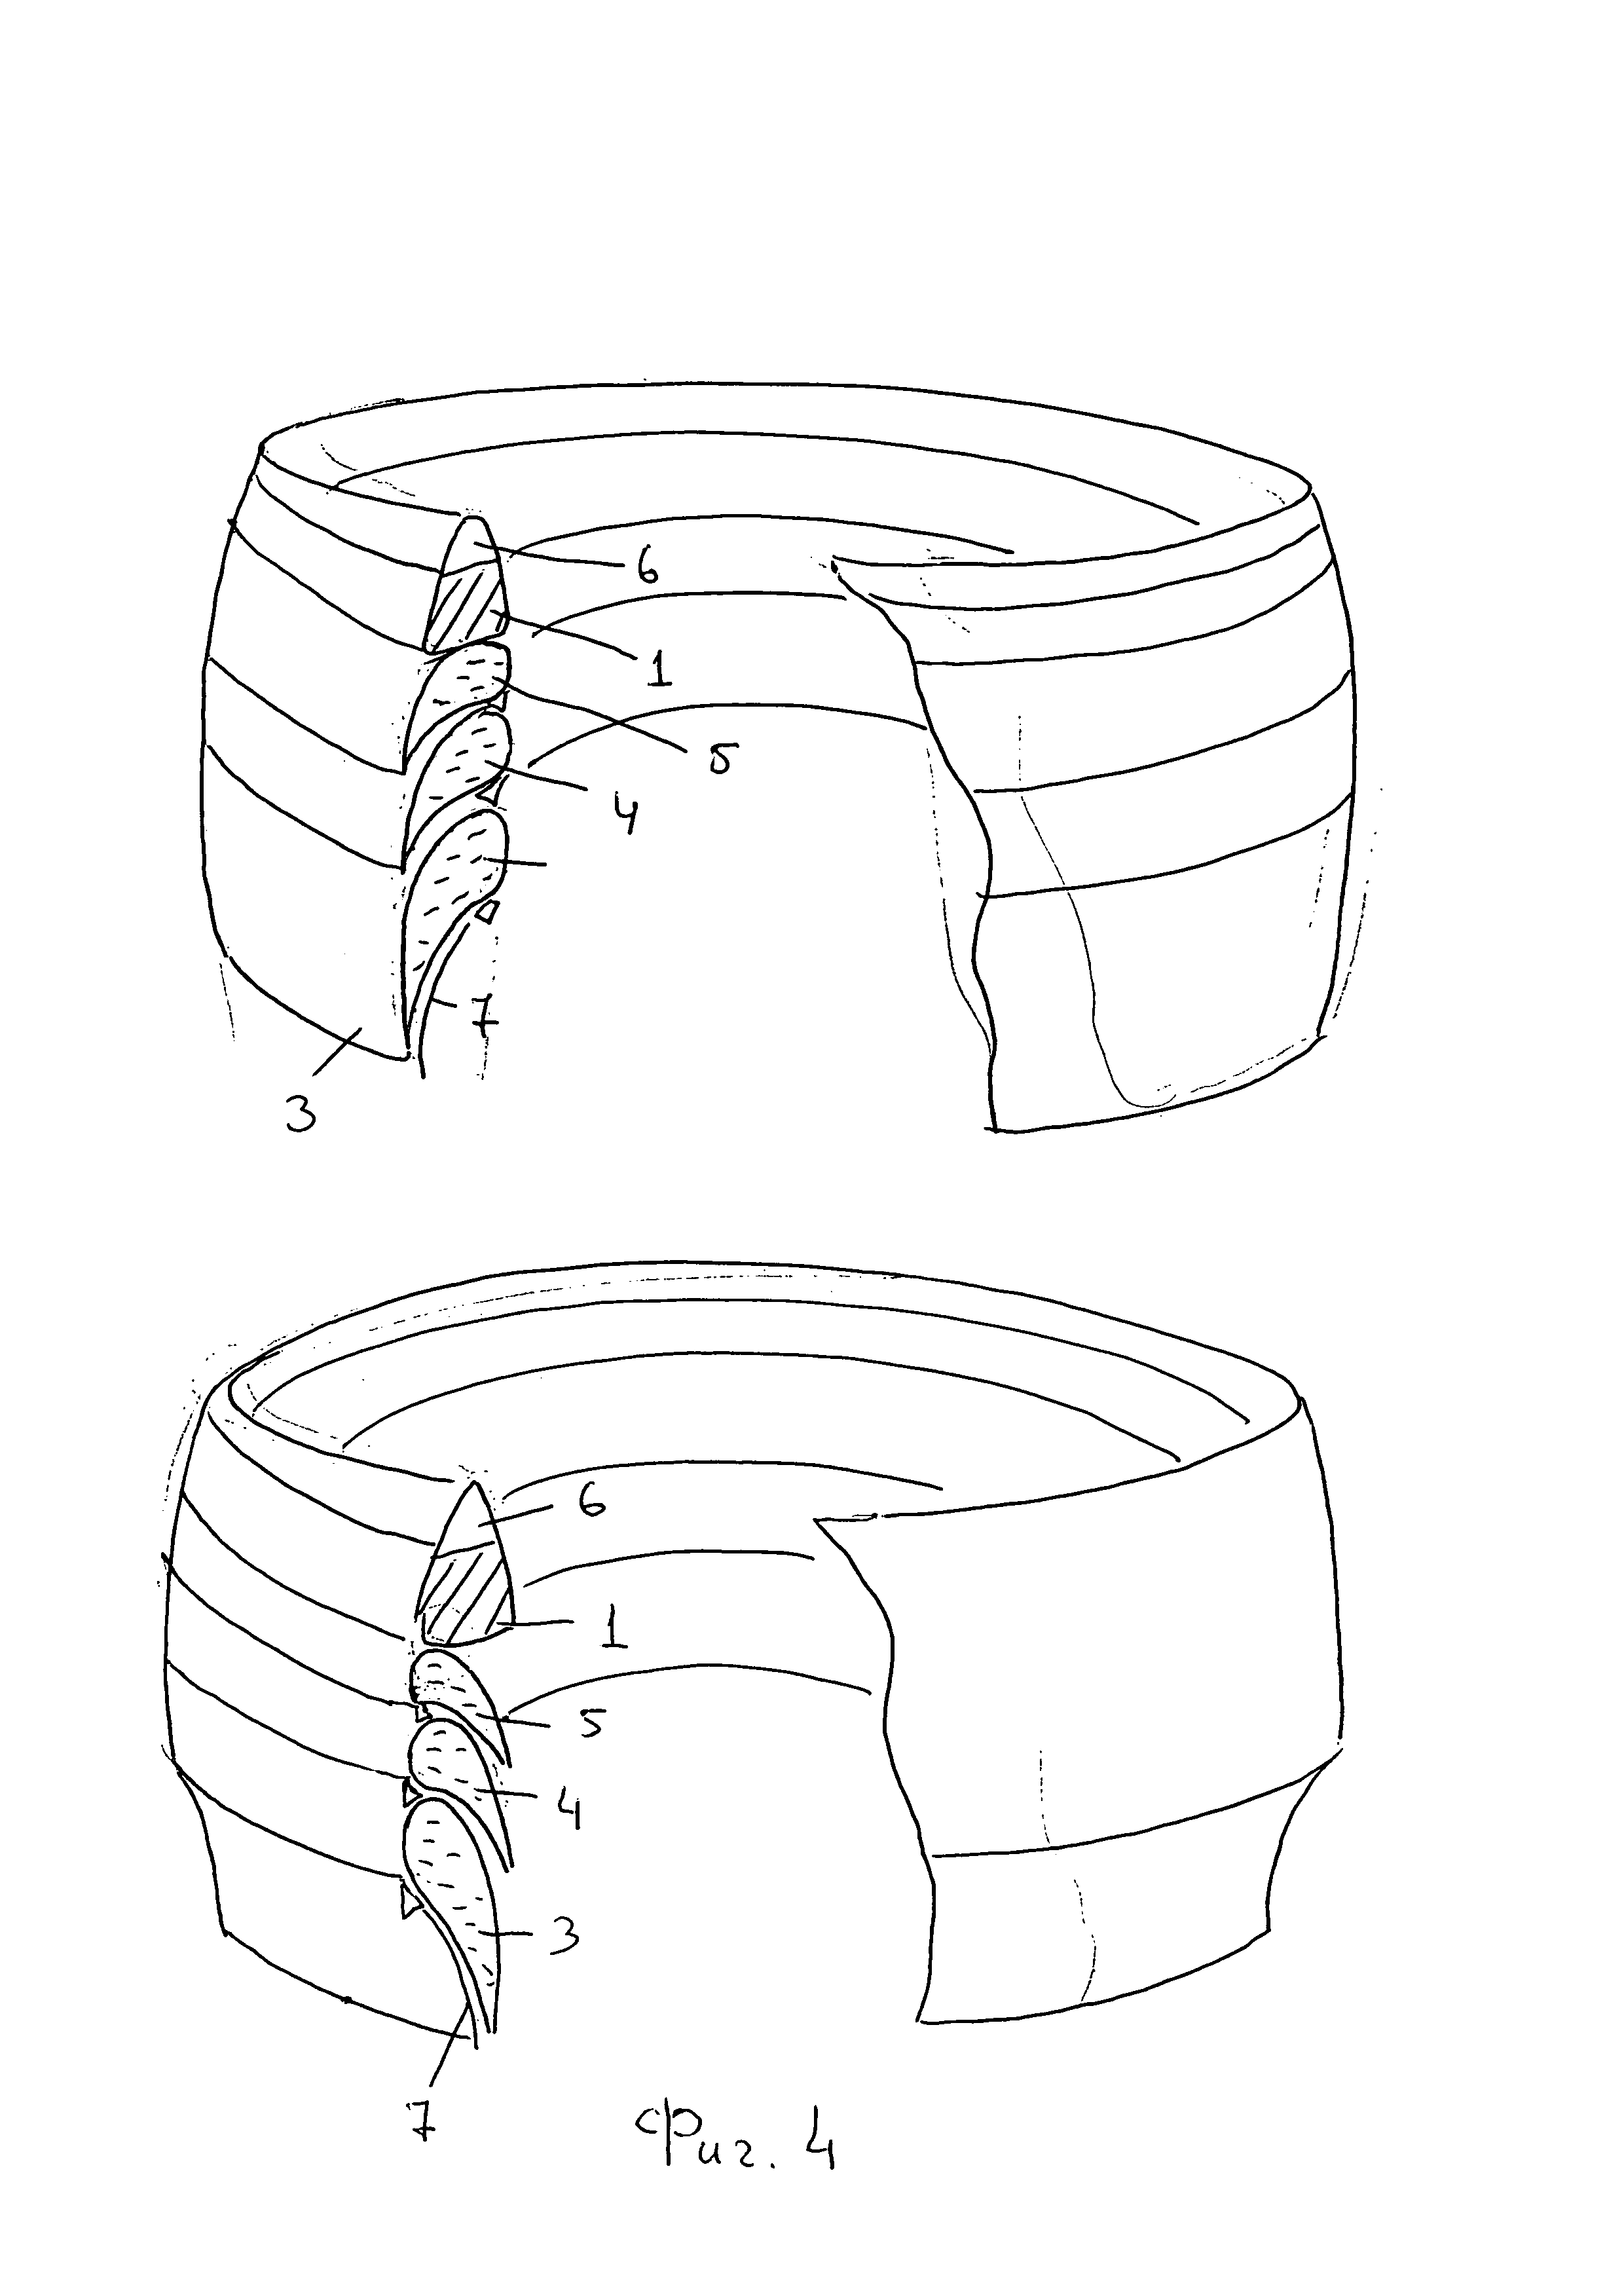 Способ и устройство для вывода в космос объектов с кольцевыми и решетчатыми поверхностями и способ вывода в космос объектов с гибкими, например, сетчато-мембранными поверхностями.